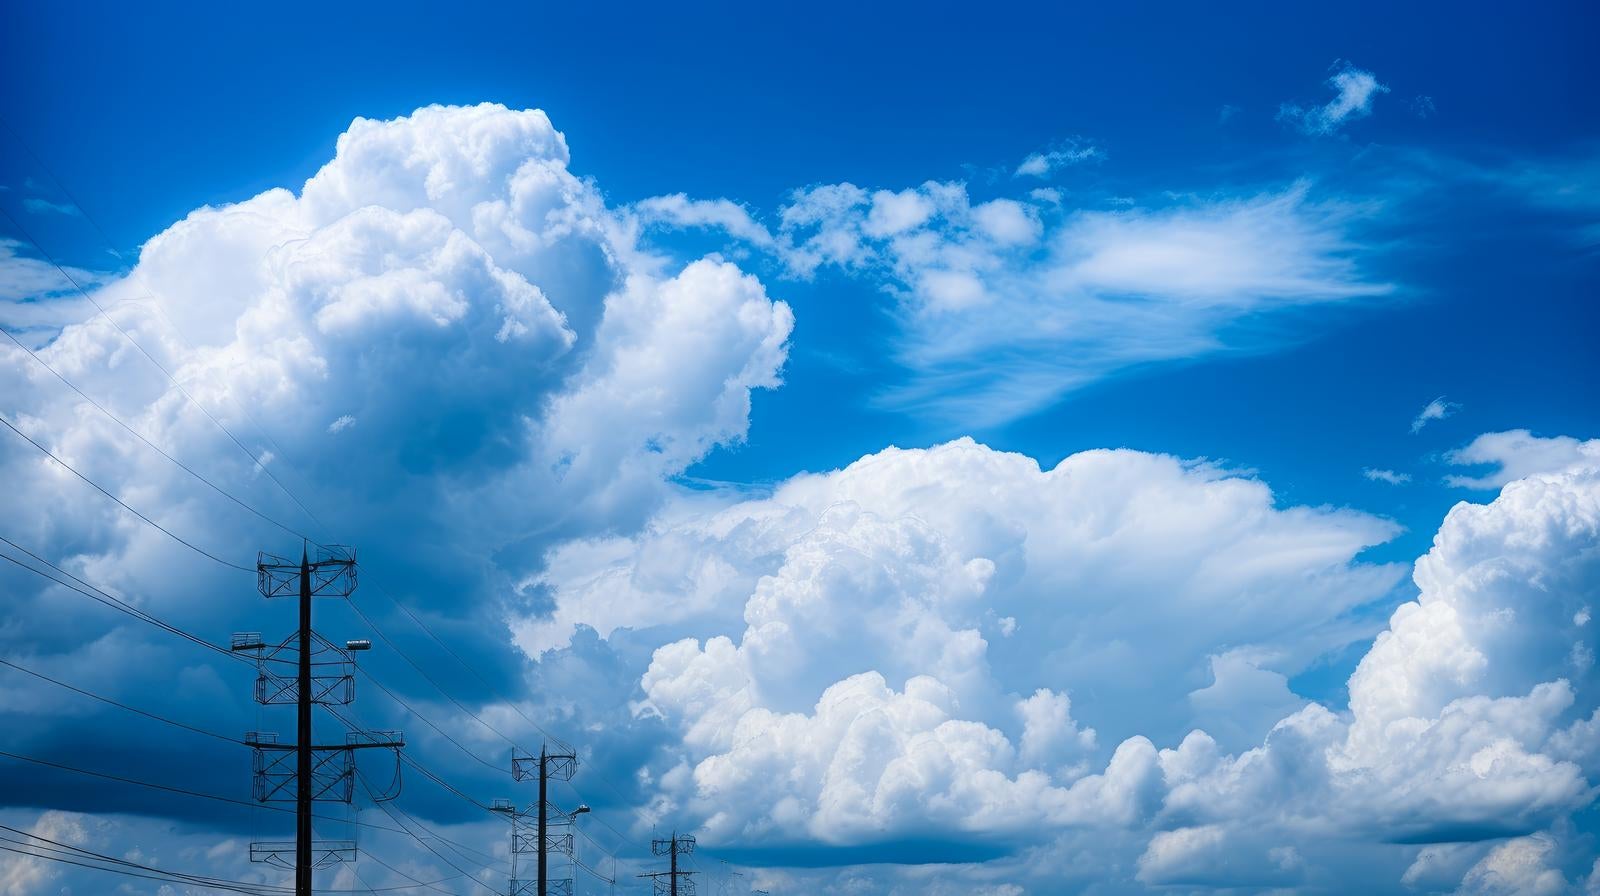 「夏日の大きな積乱雲と電柱」の写真